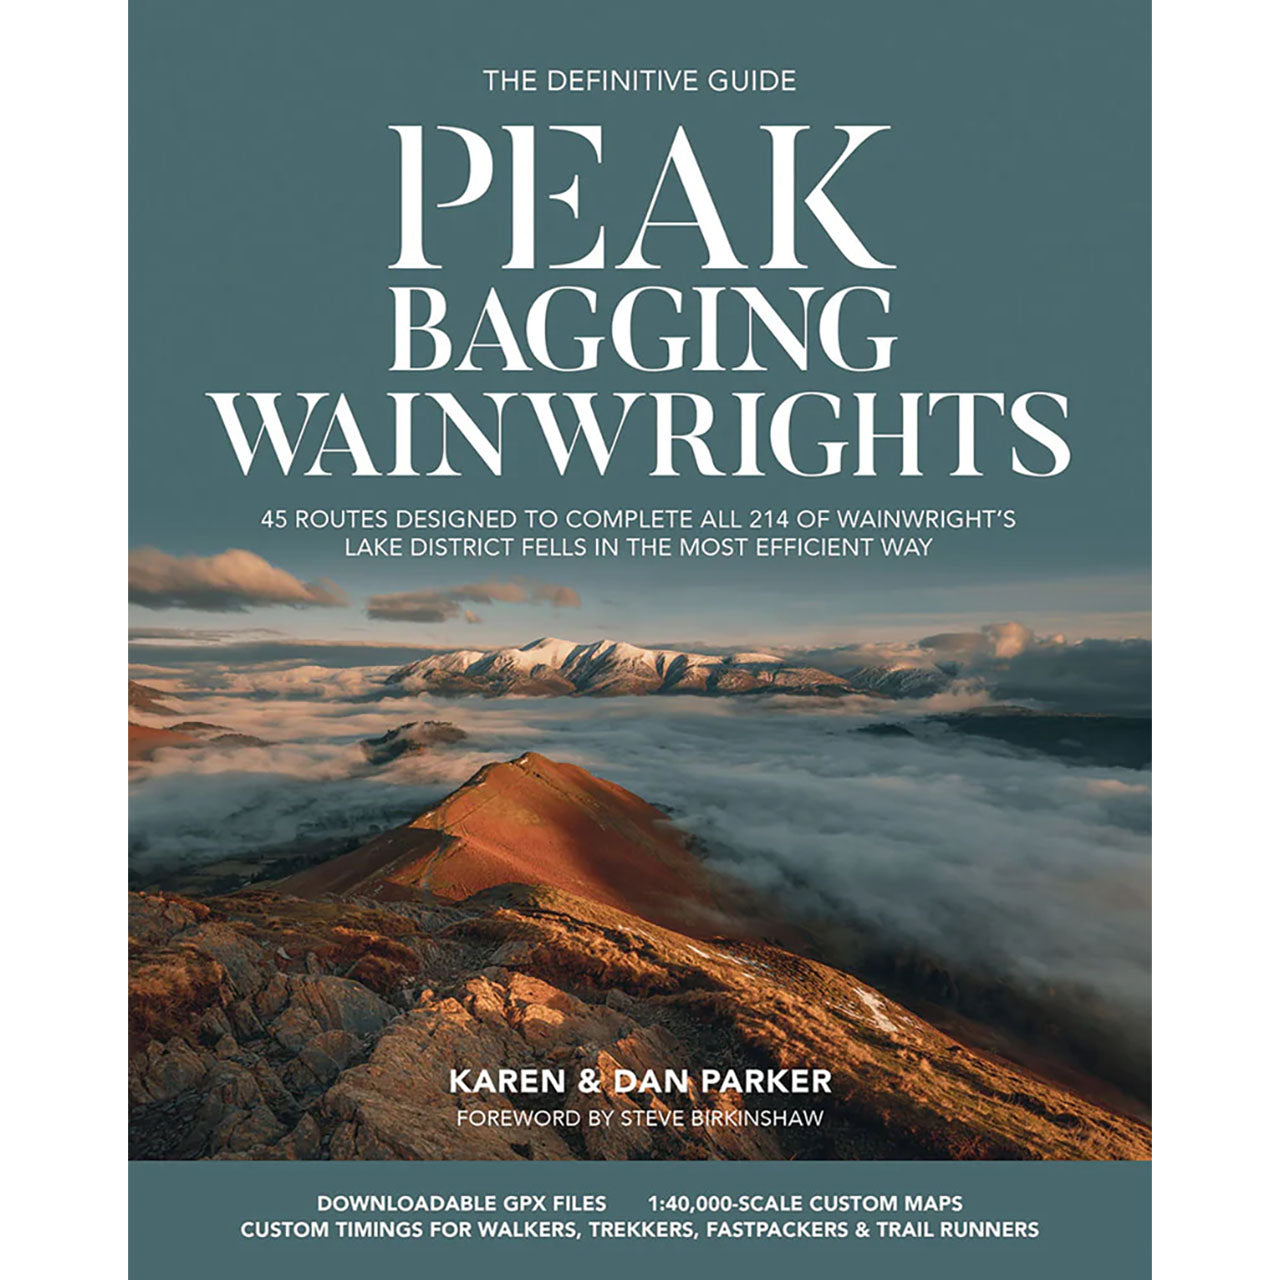 Peak Bagging Wainwrights by Karen & Dan Parker